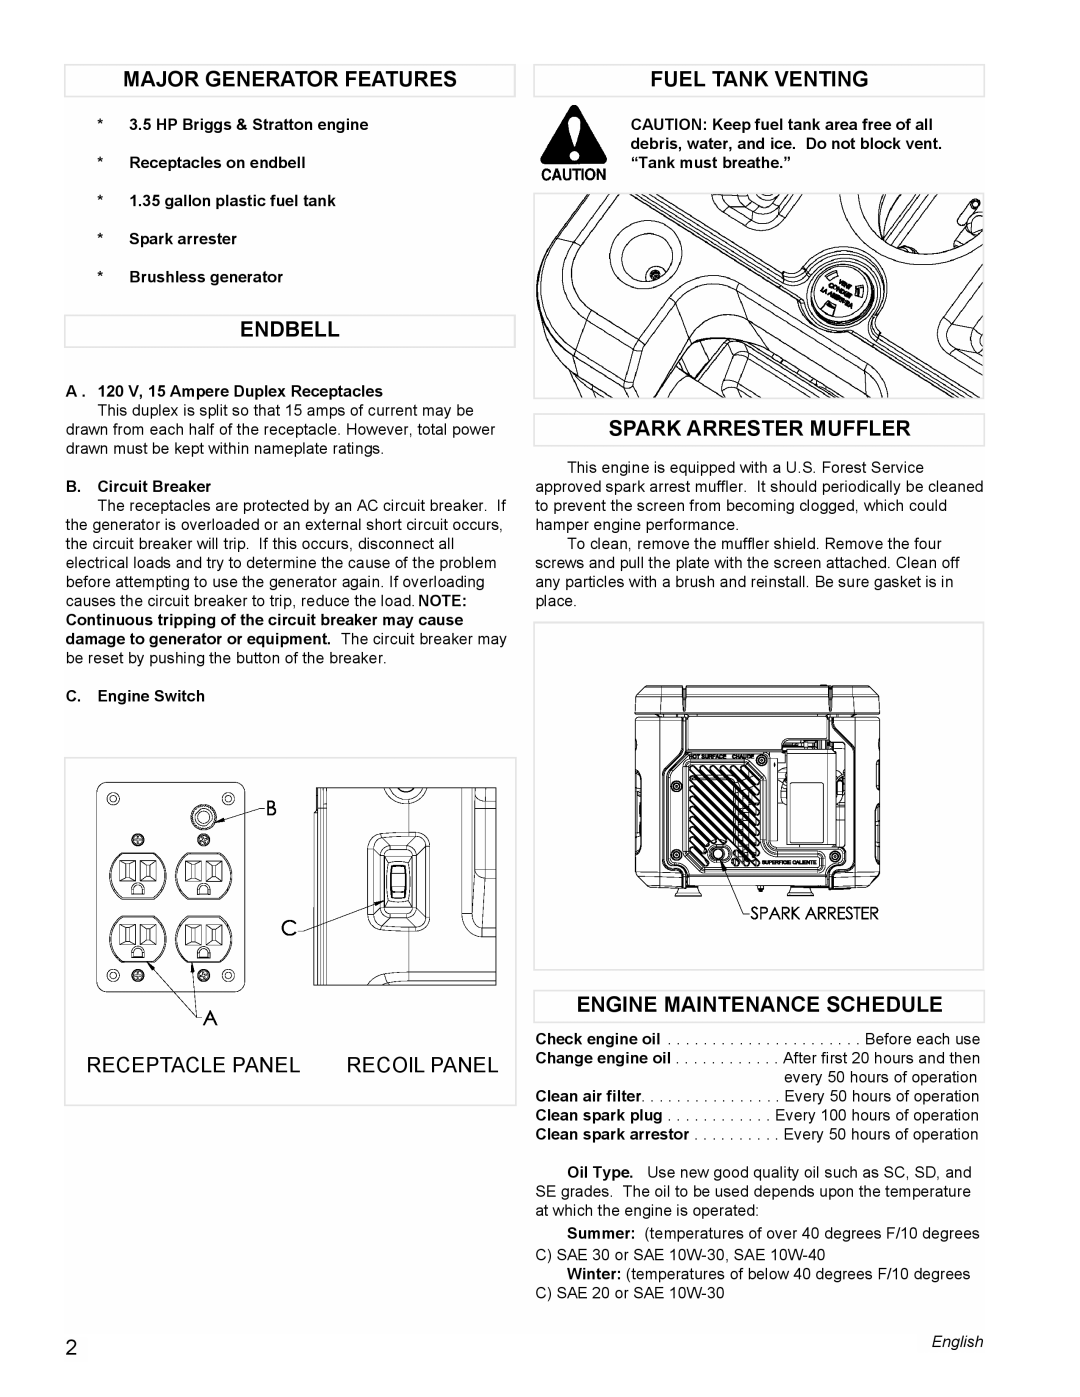 Powermate PM0401857 manual Major Generator Features, Fuel Tank Venting, Endbell, Spark Arrester Muffler, Receptacle Panel 